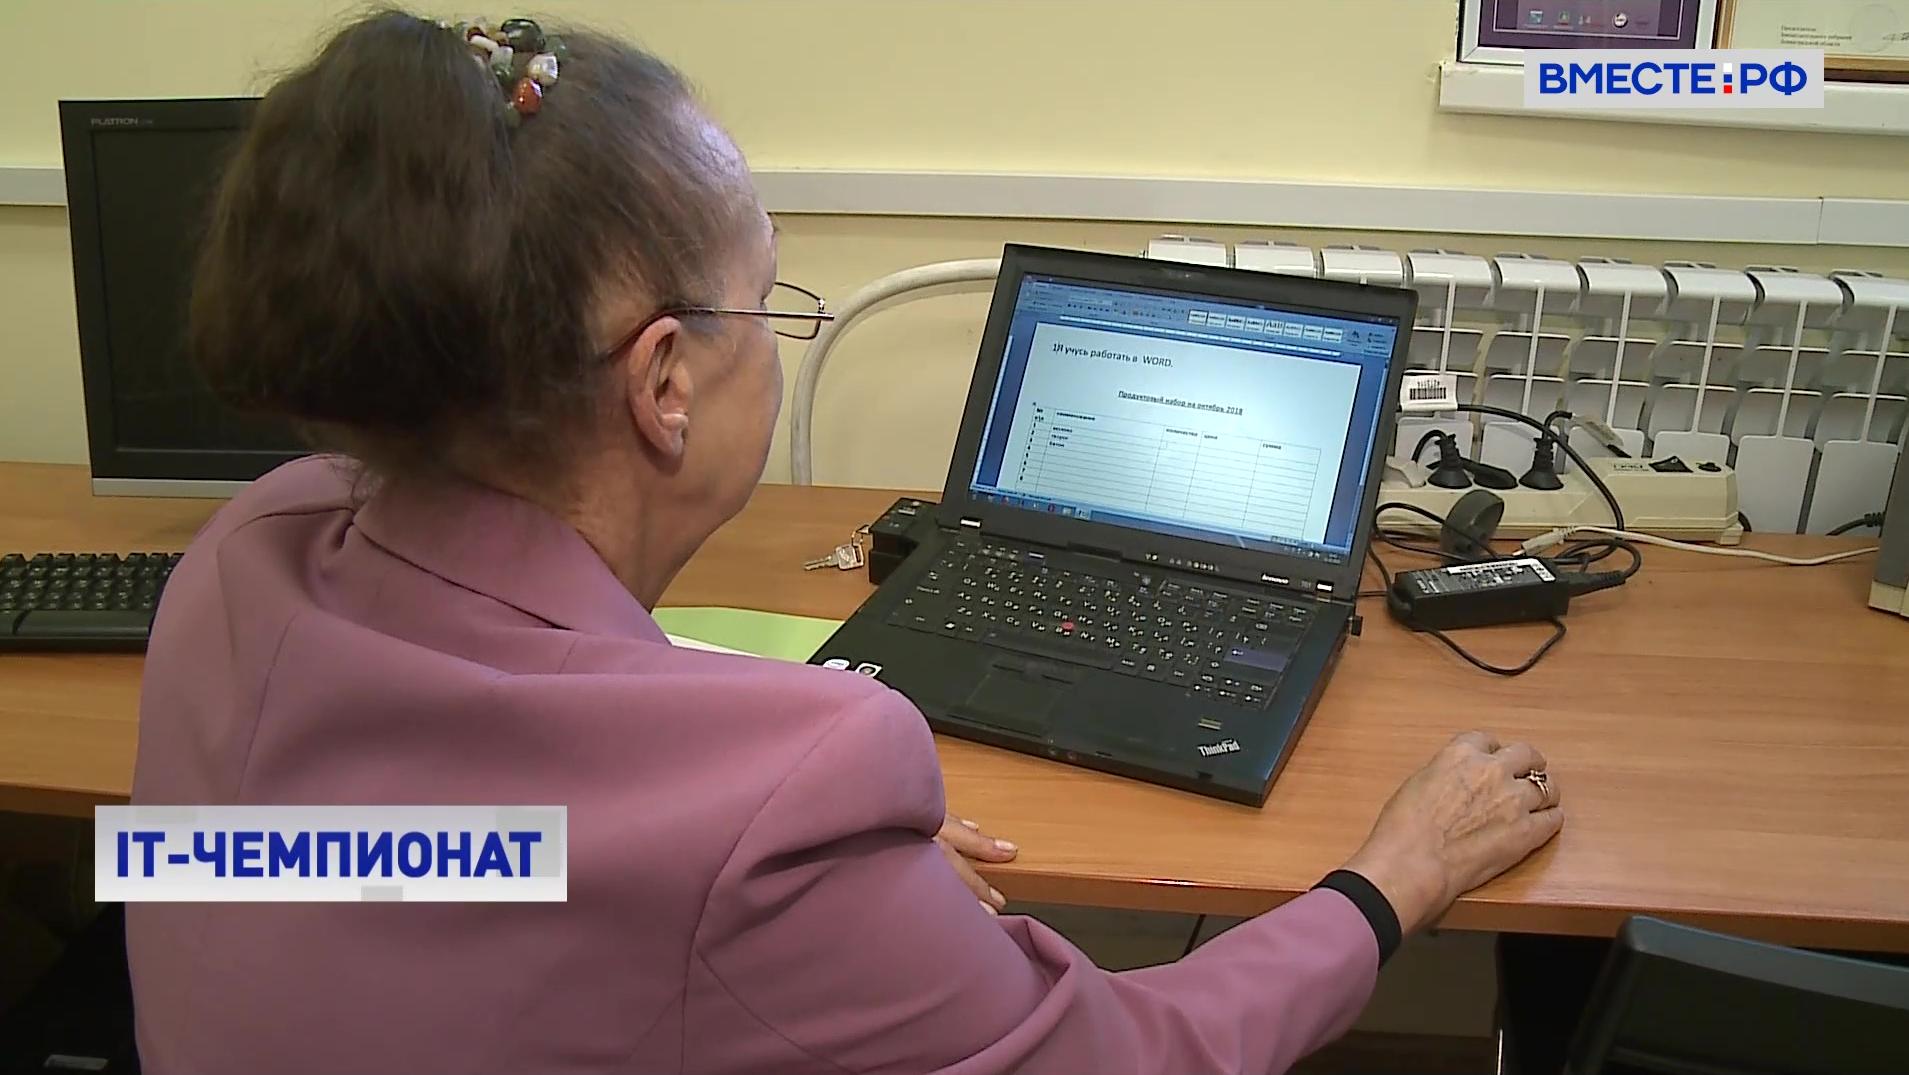 IT-чемпионат: в Москве прошли соревнования по компьютерному многоборью среди пенсионеров